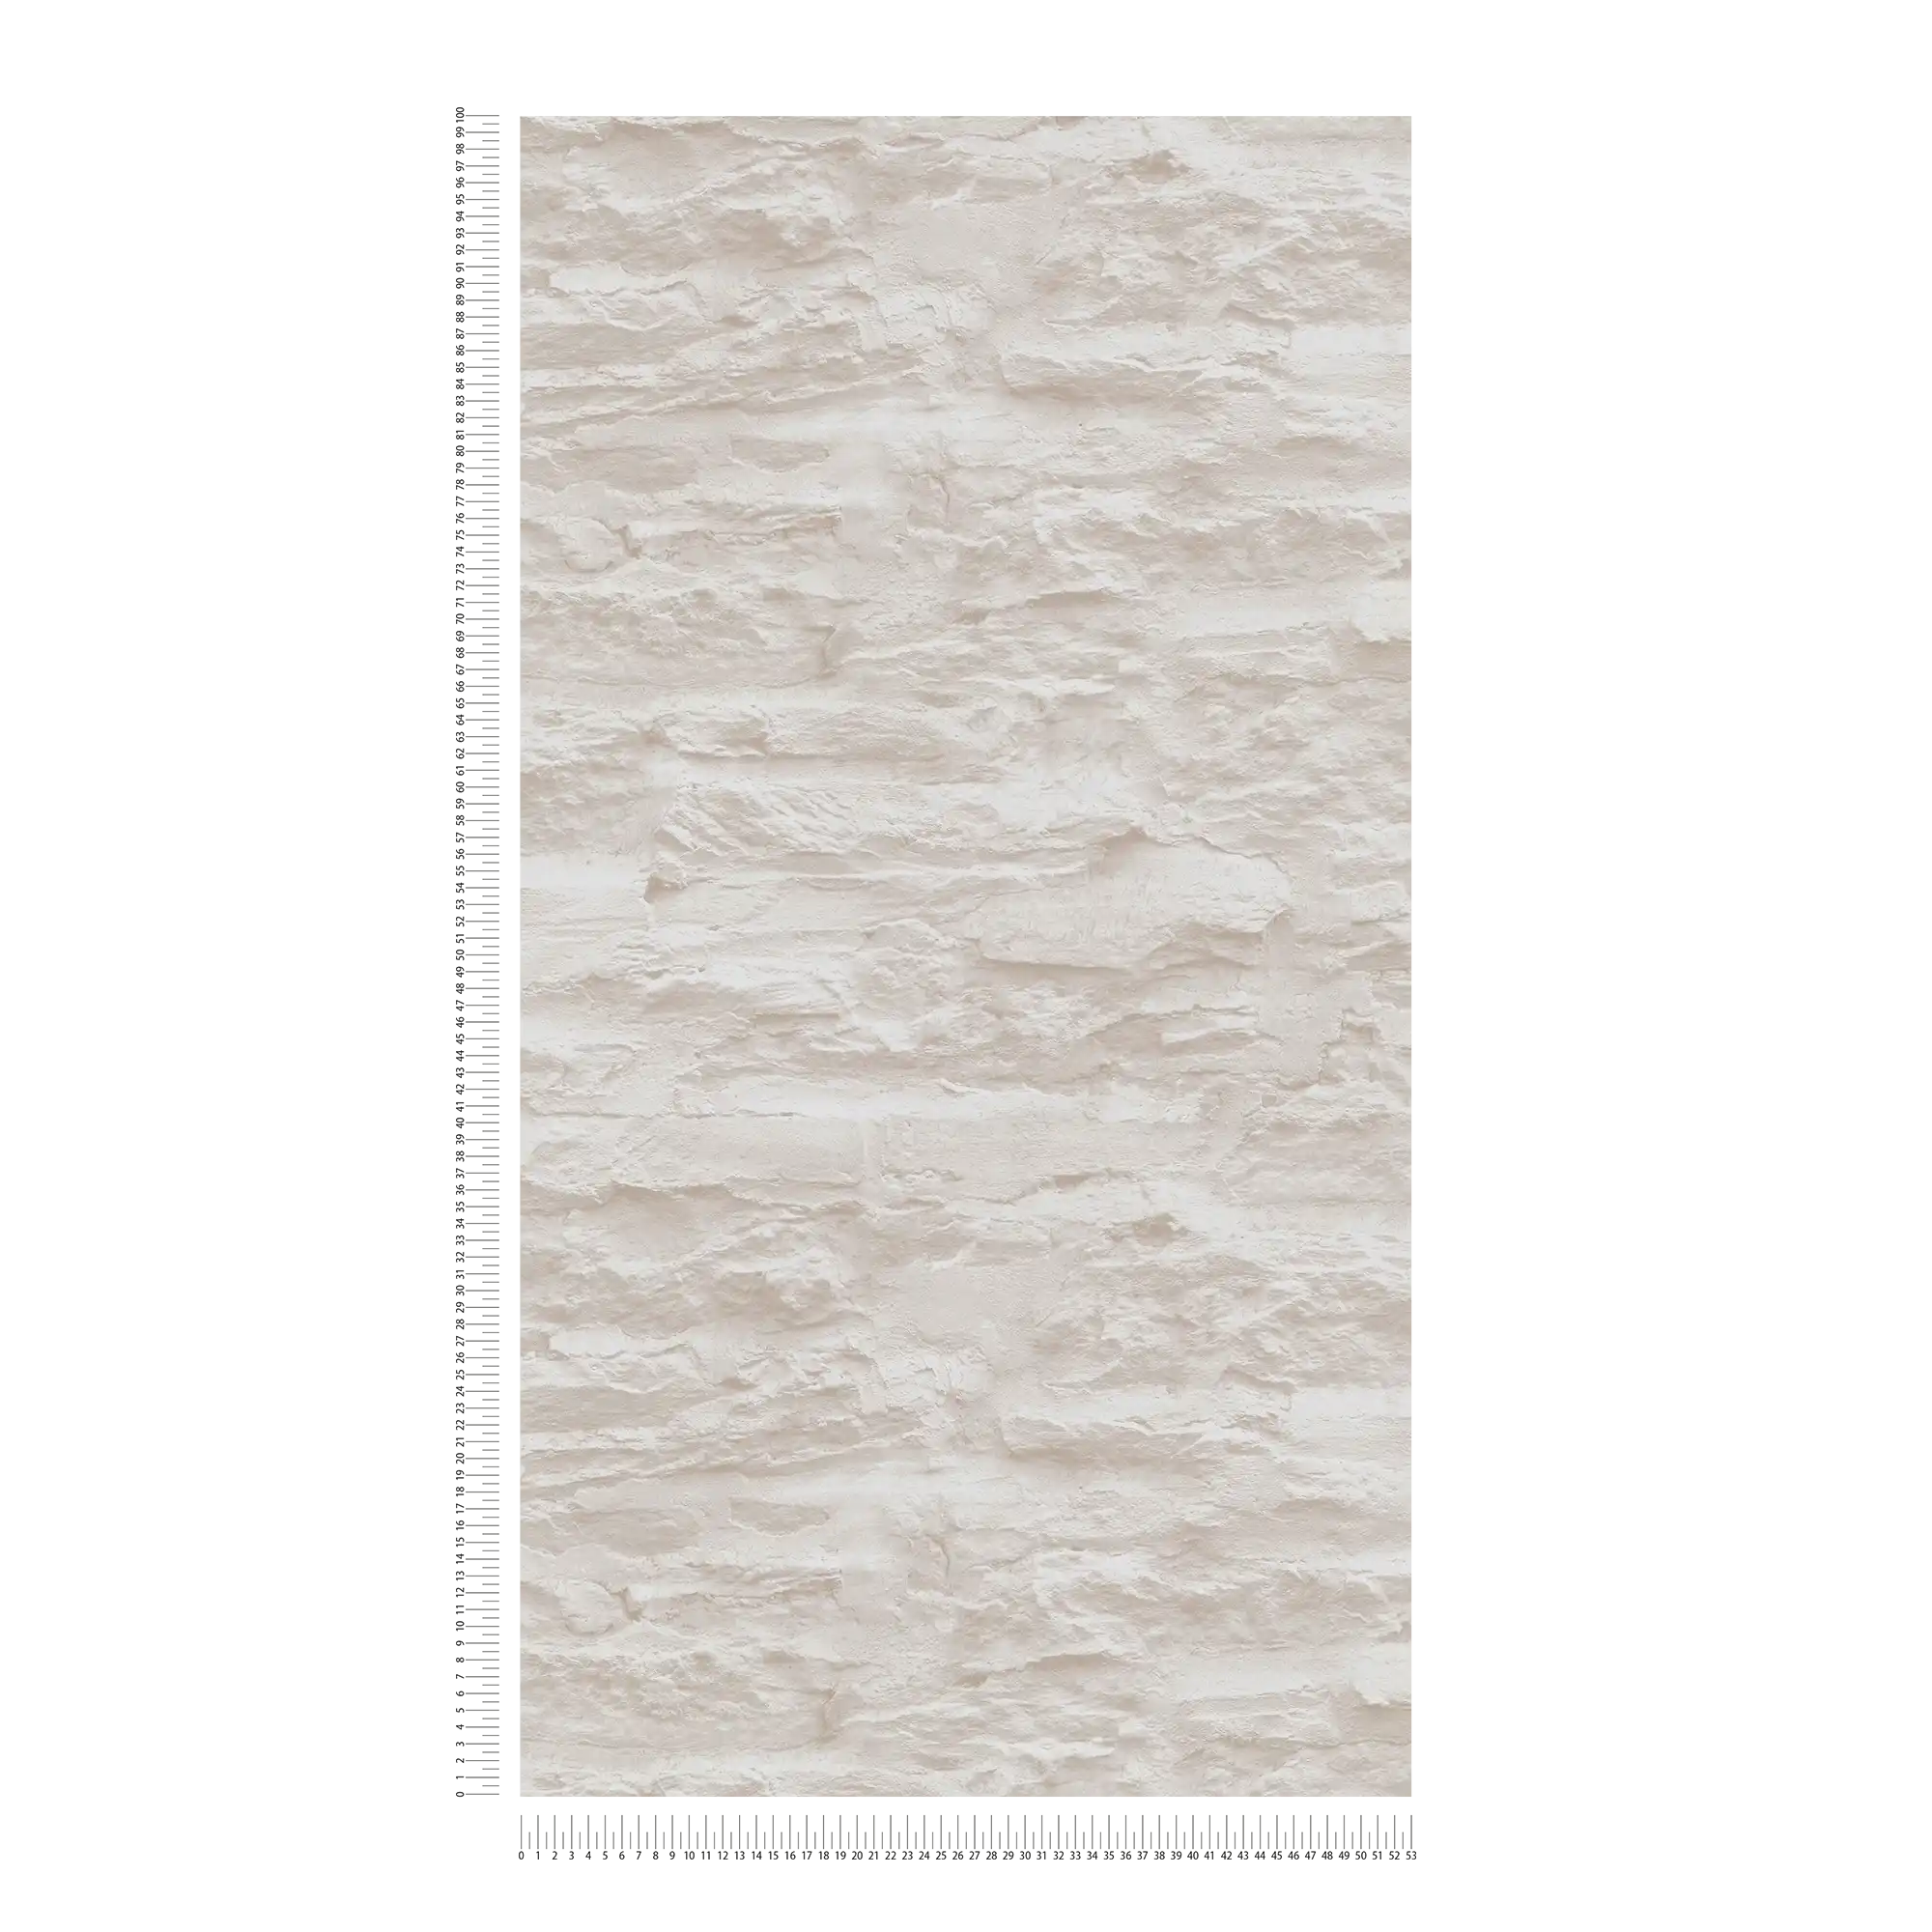             Zelfklevend behangpapier | muuroptiek met natuursteen & pleister - crème, wit
        